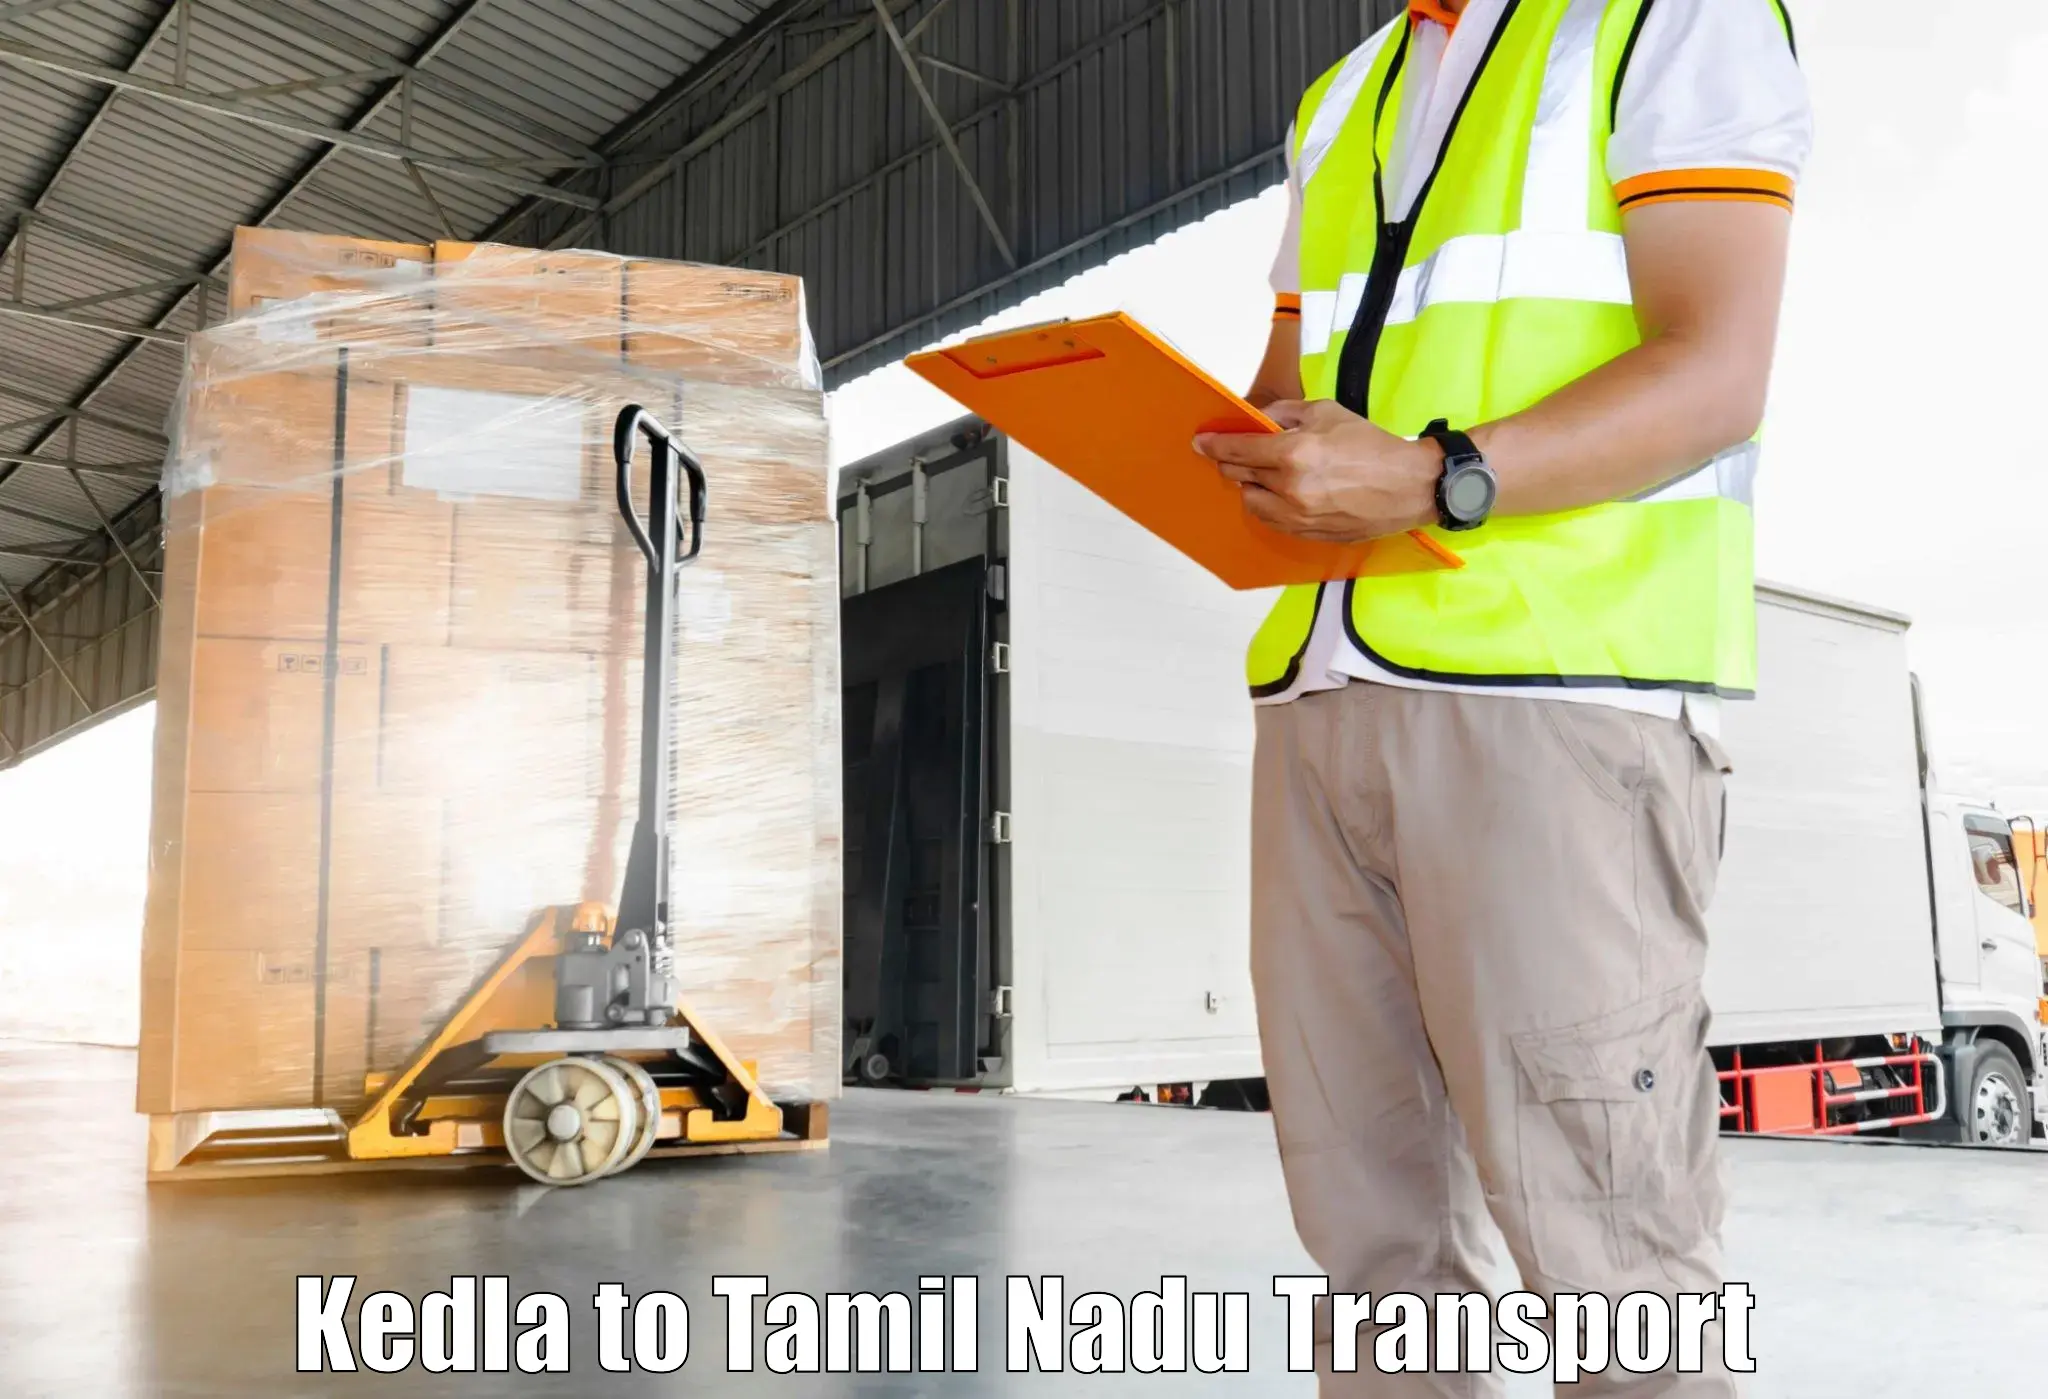 Vehicle transport services Kedla to Kovilpatti